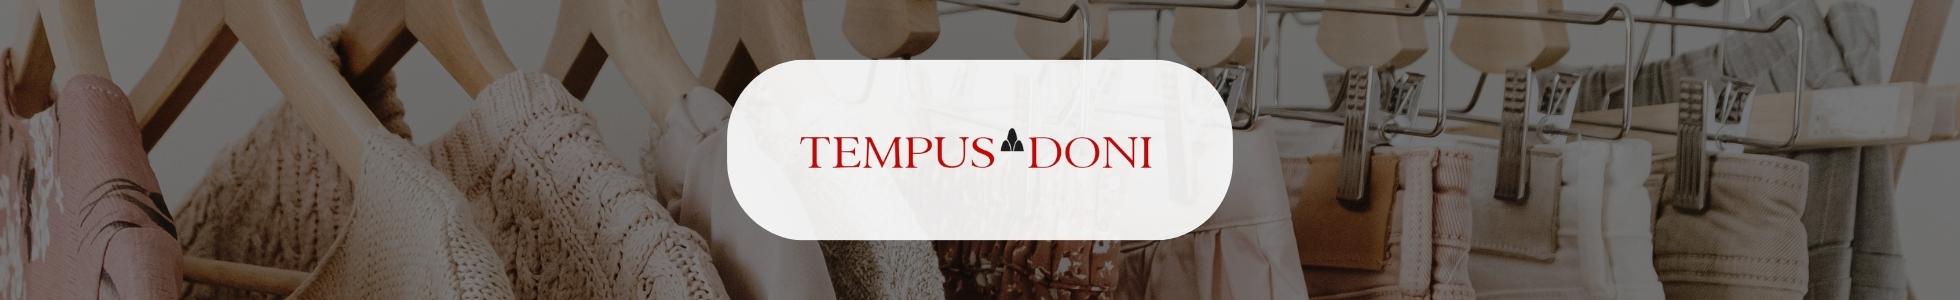 Tempu Doni - Shop online abbigliamento, scarpe e borse